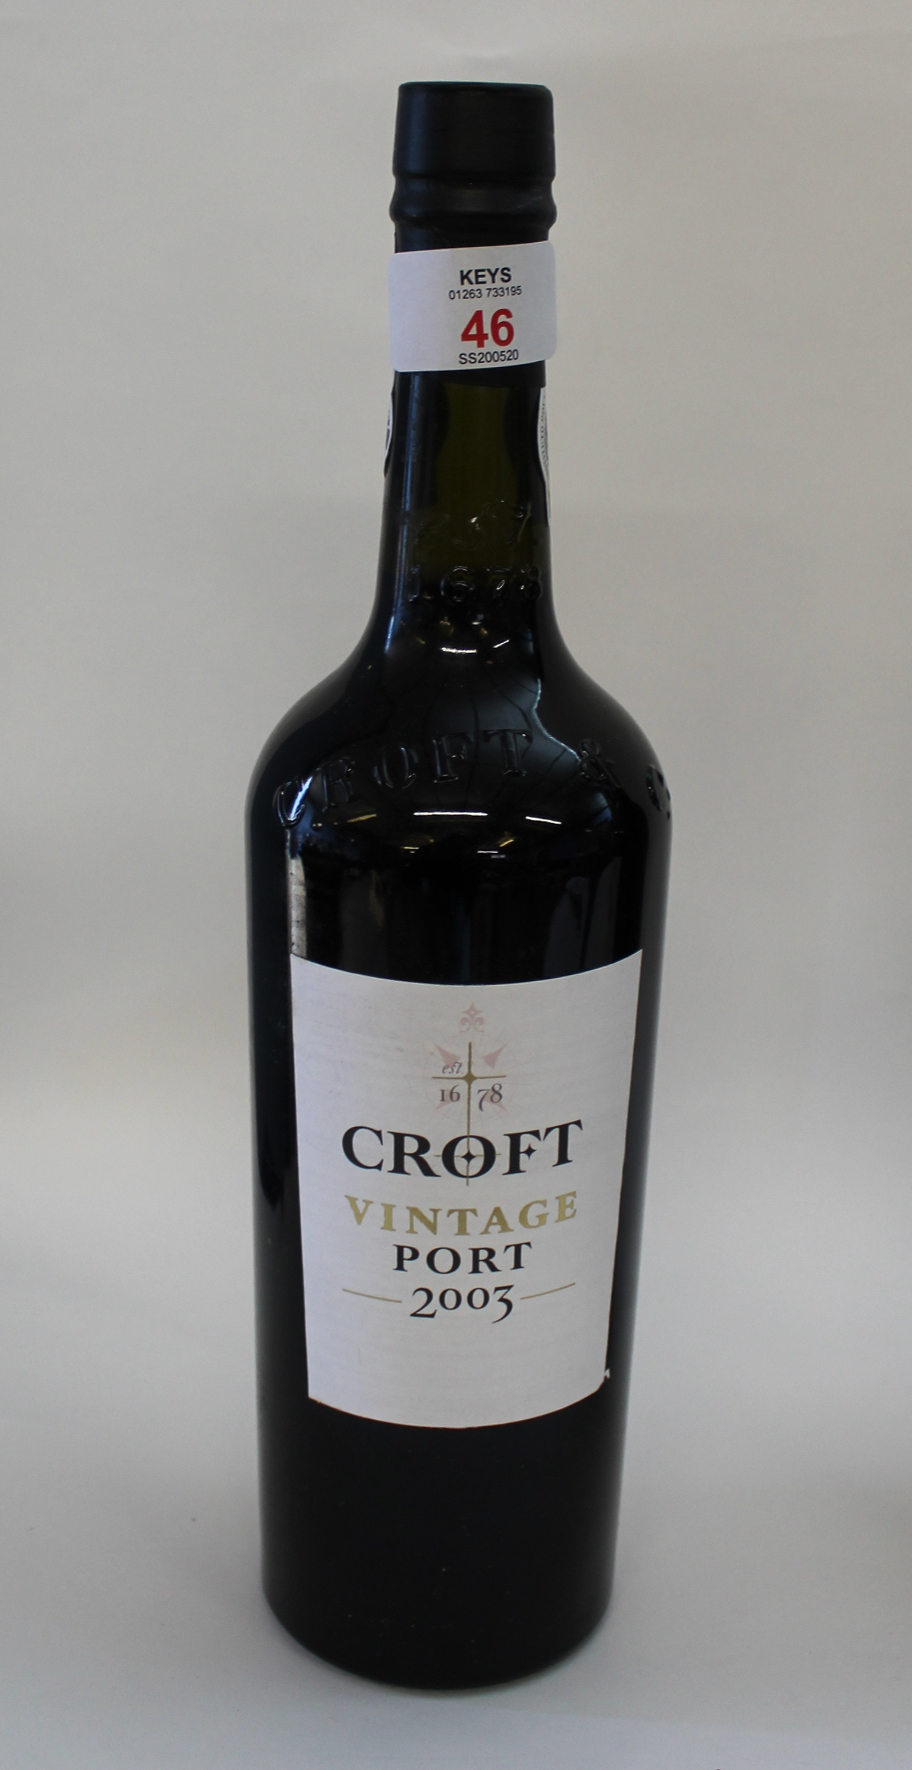 2003 Croft Vintage Port, one bottle.